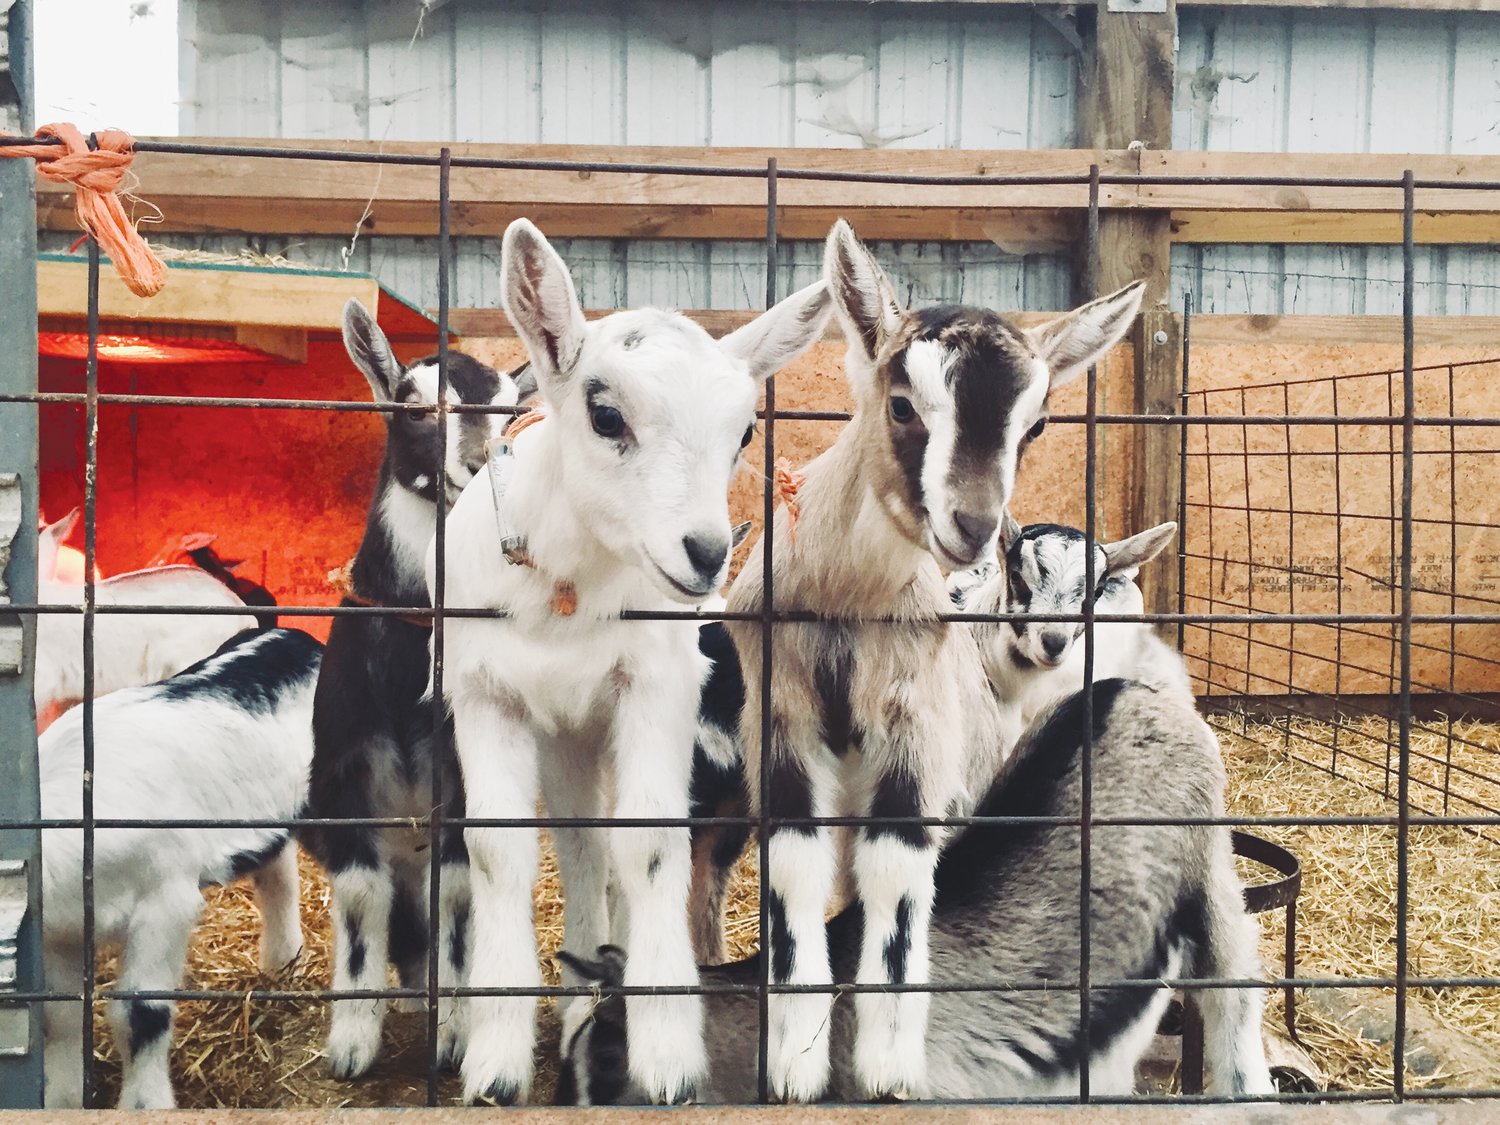 Celebrity Dairy ofrece visitas a sus cabras para grupos pequeños.